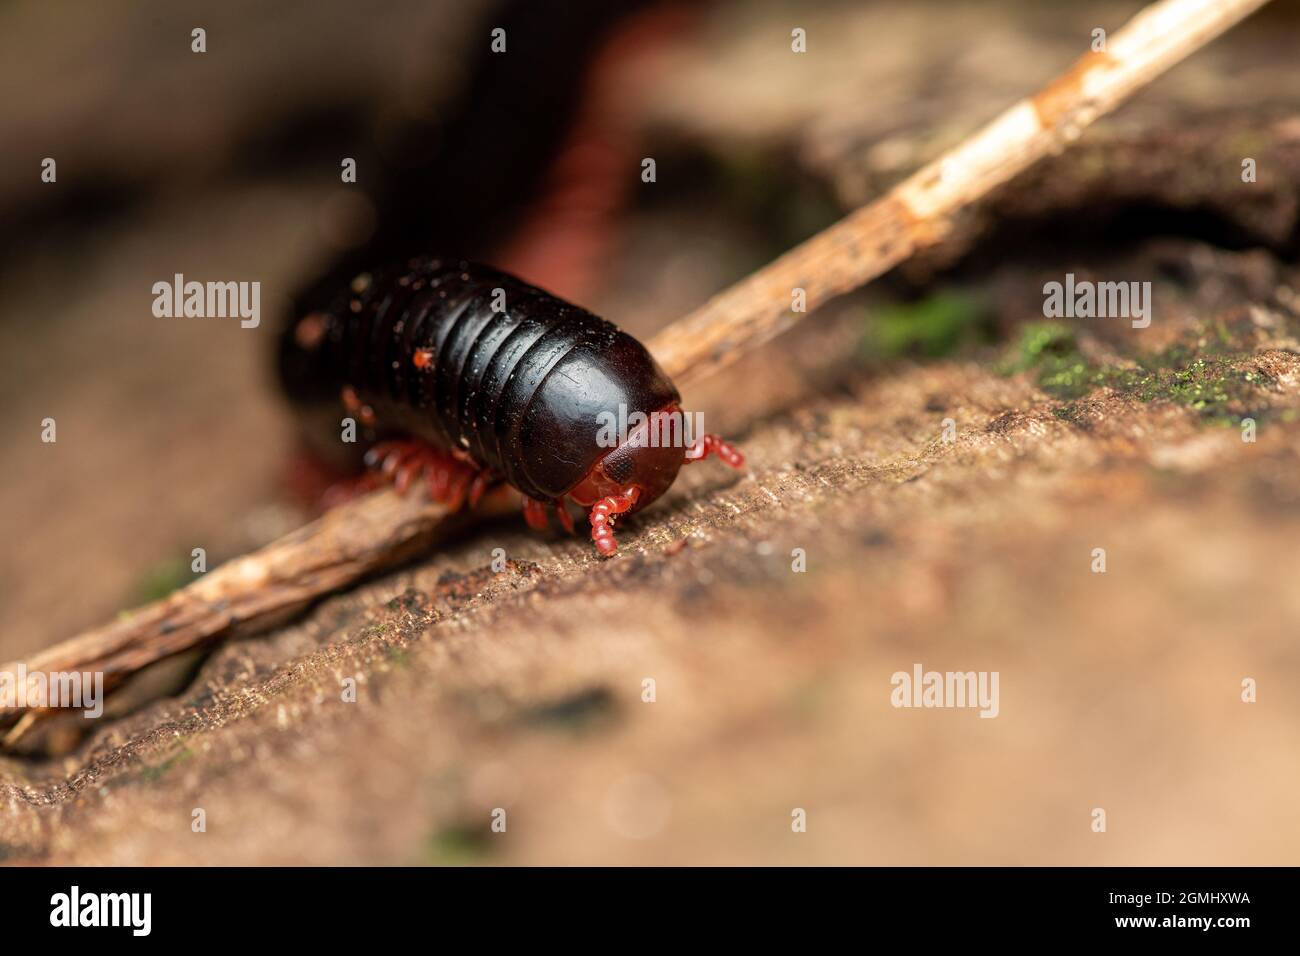 vue rapprochée d'un millipede à pattes rouges, vue de face basse Banque D'Images